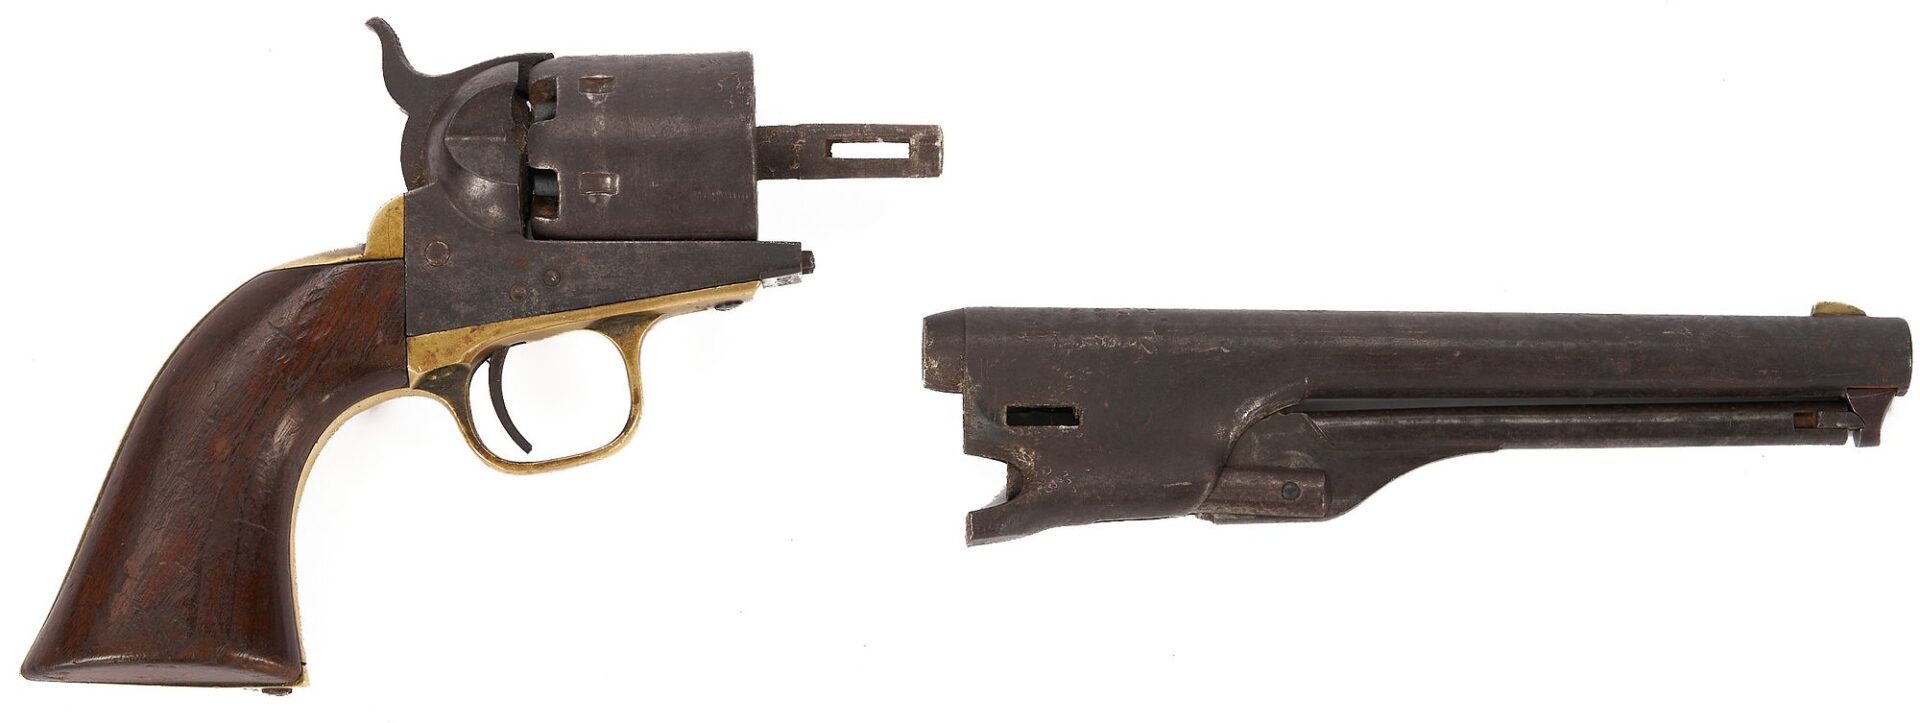 Lot 549: Colt Model 1861 Navy Revolver; 1864 Civil War Era